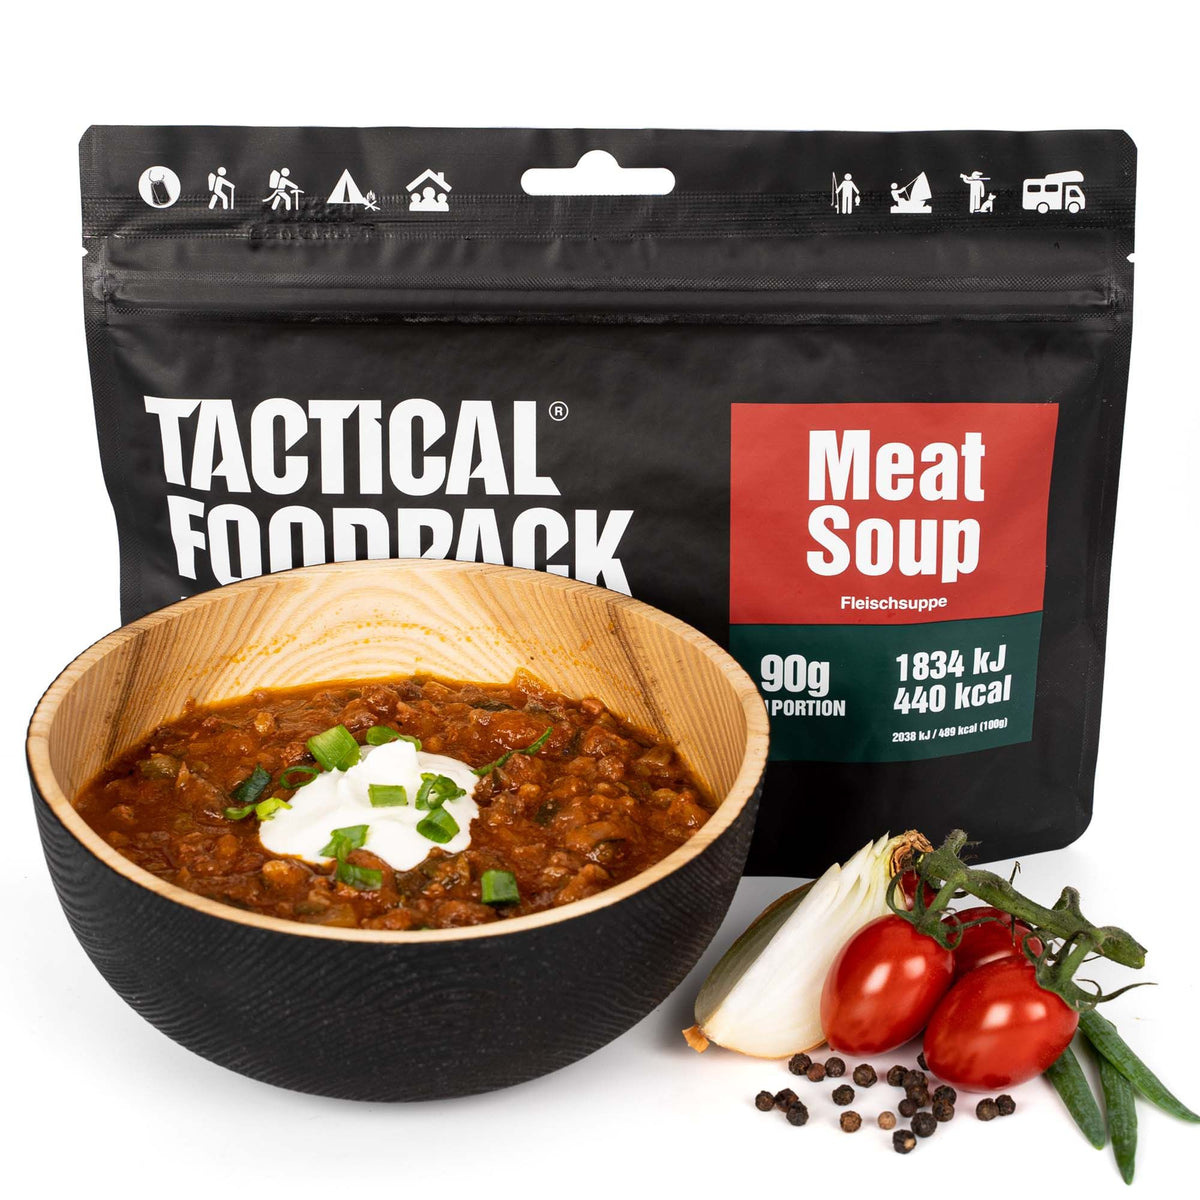 Tactical Foodpack | Meat Soup 90g - Zuppa di carne